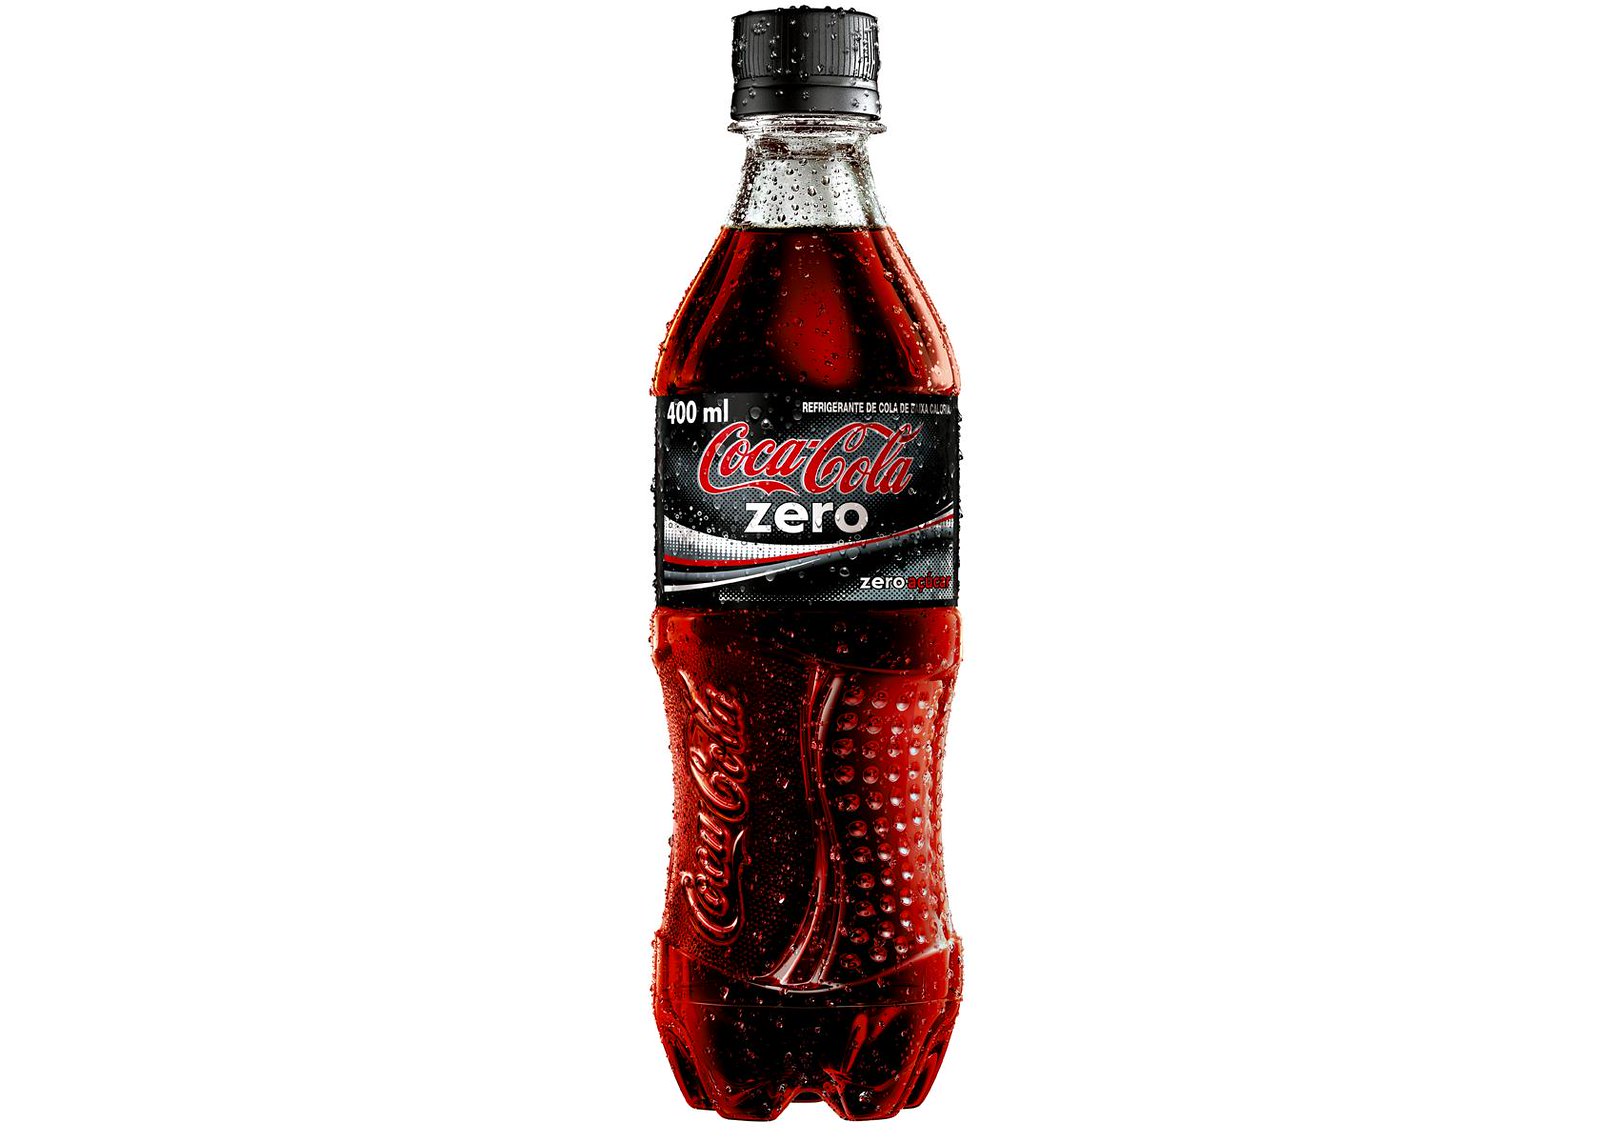 Le Coca Zéro est-il vraiment moins catastrophique pour la santé que le Coca  normal ?